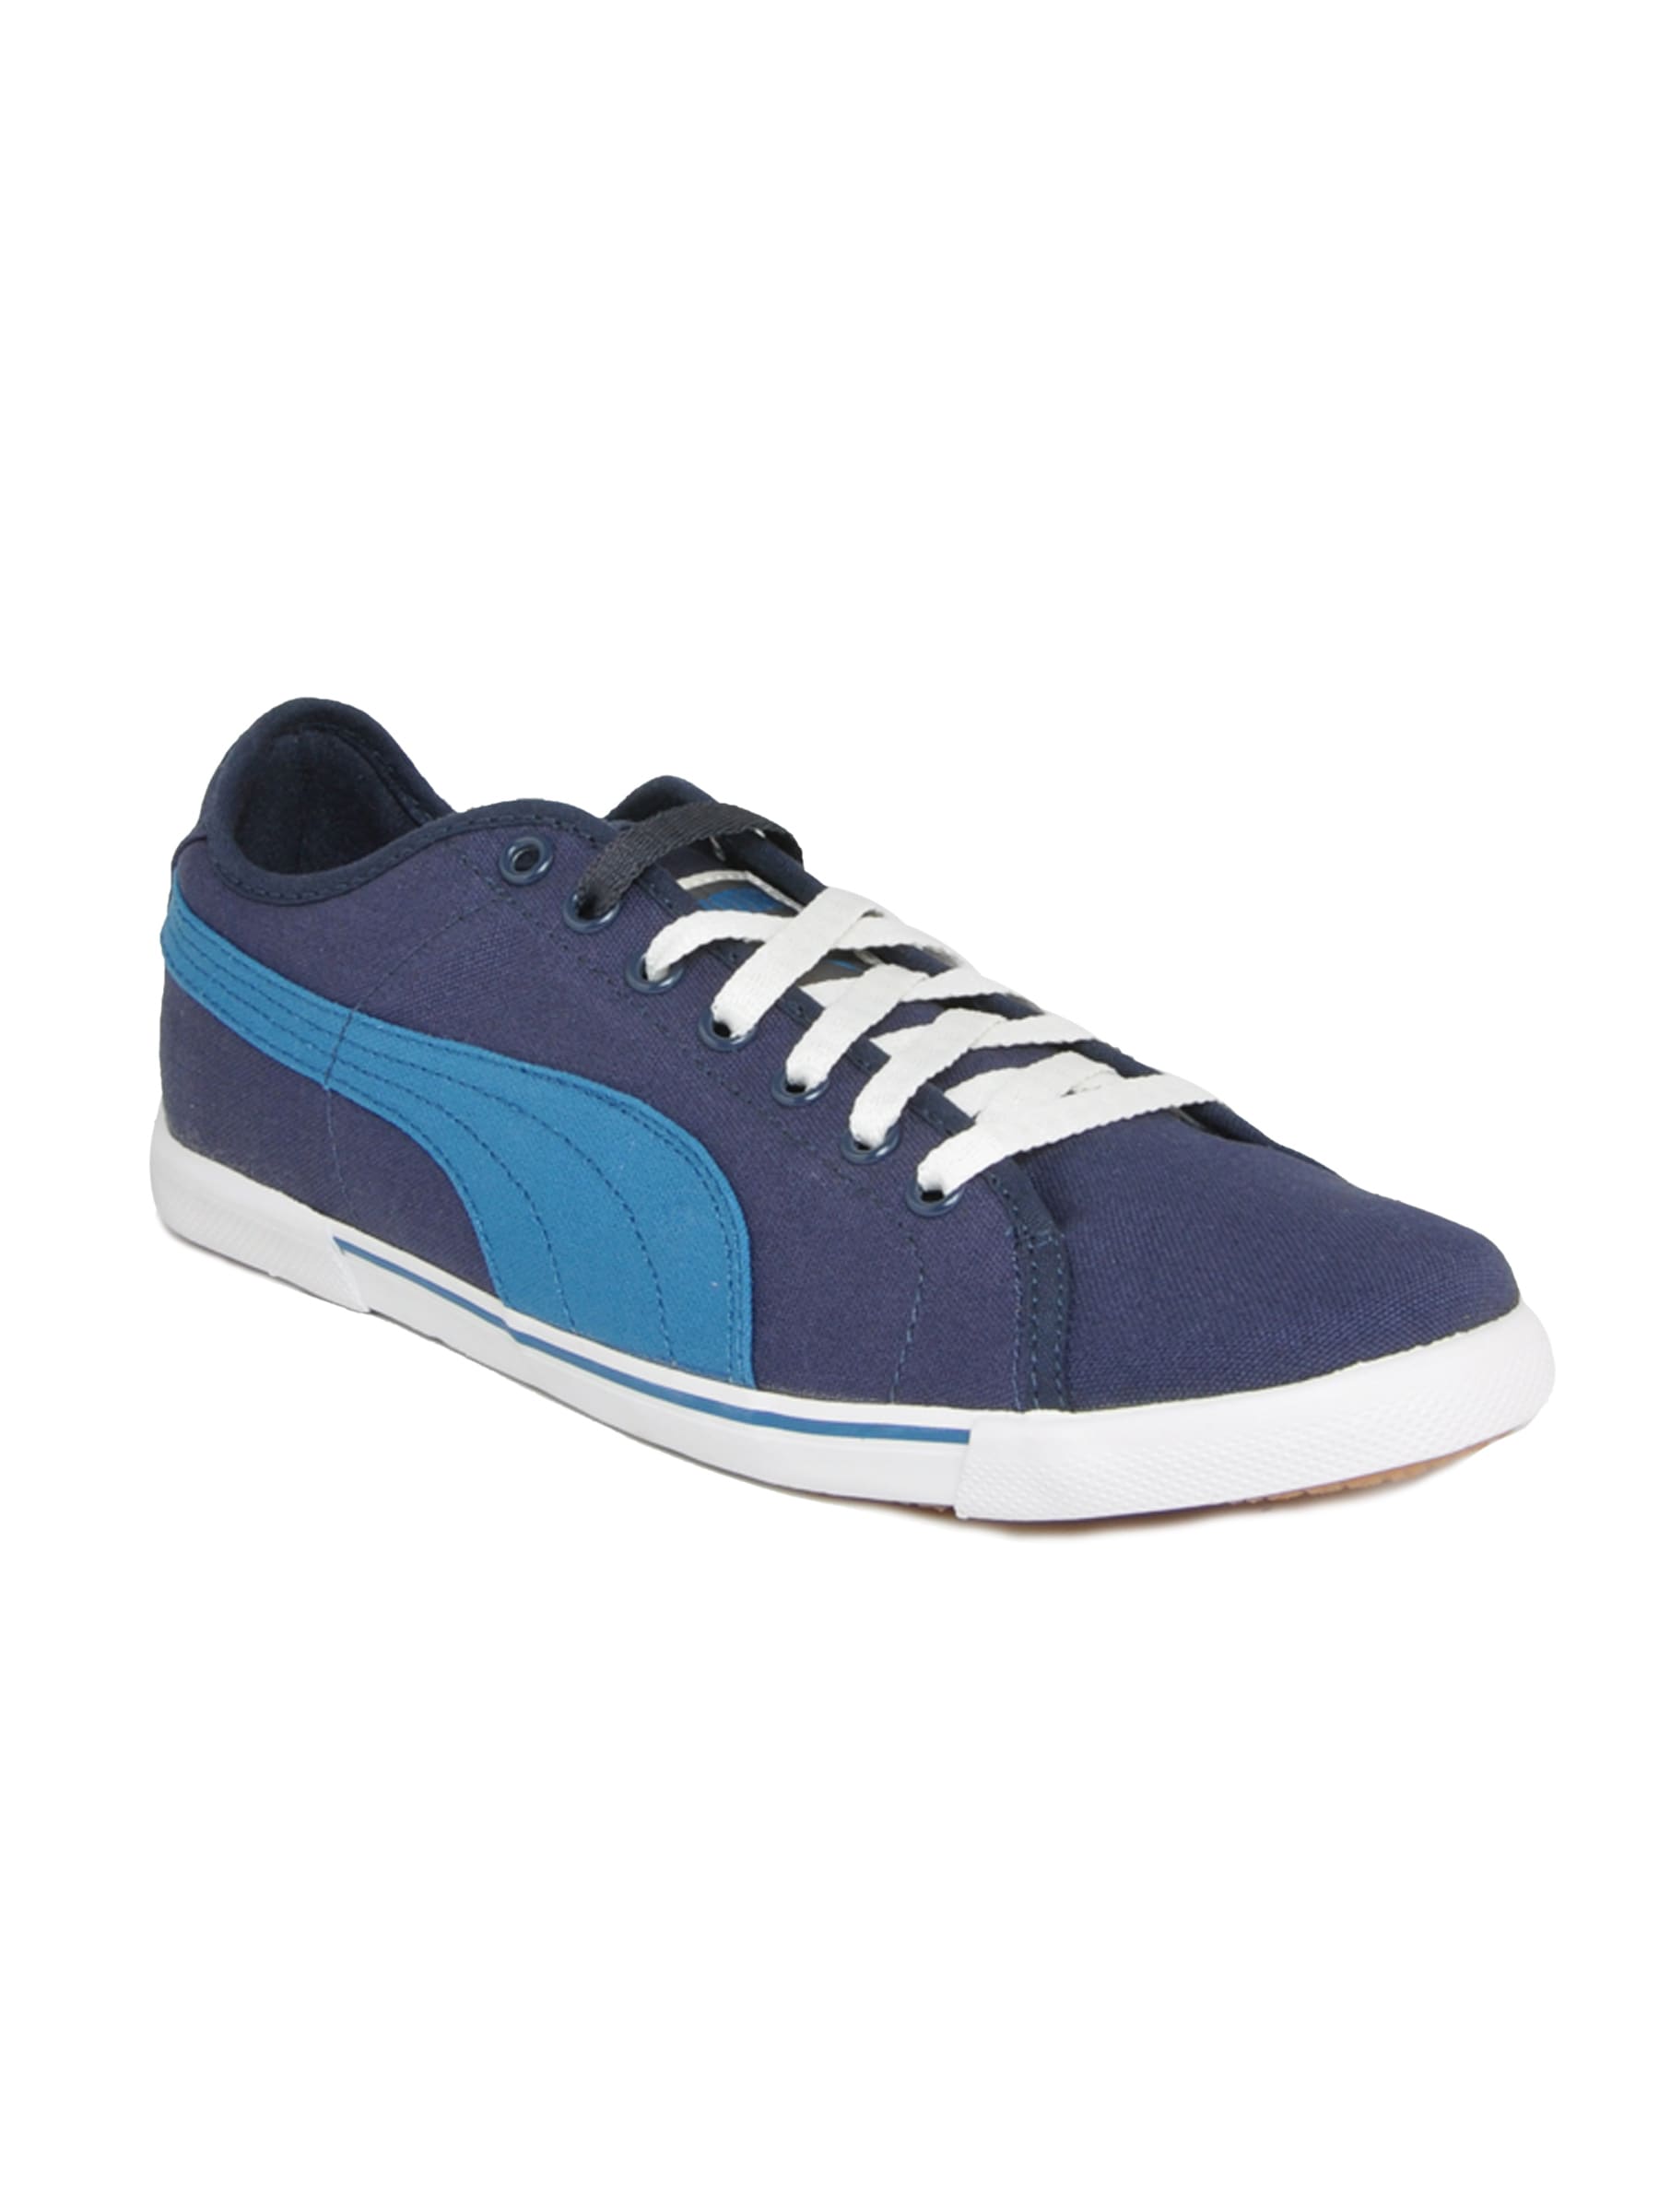 Puma Men Benecio Canvas Blue Casual Shoes